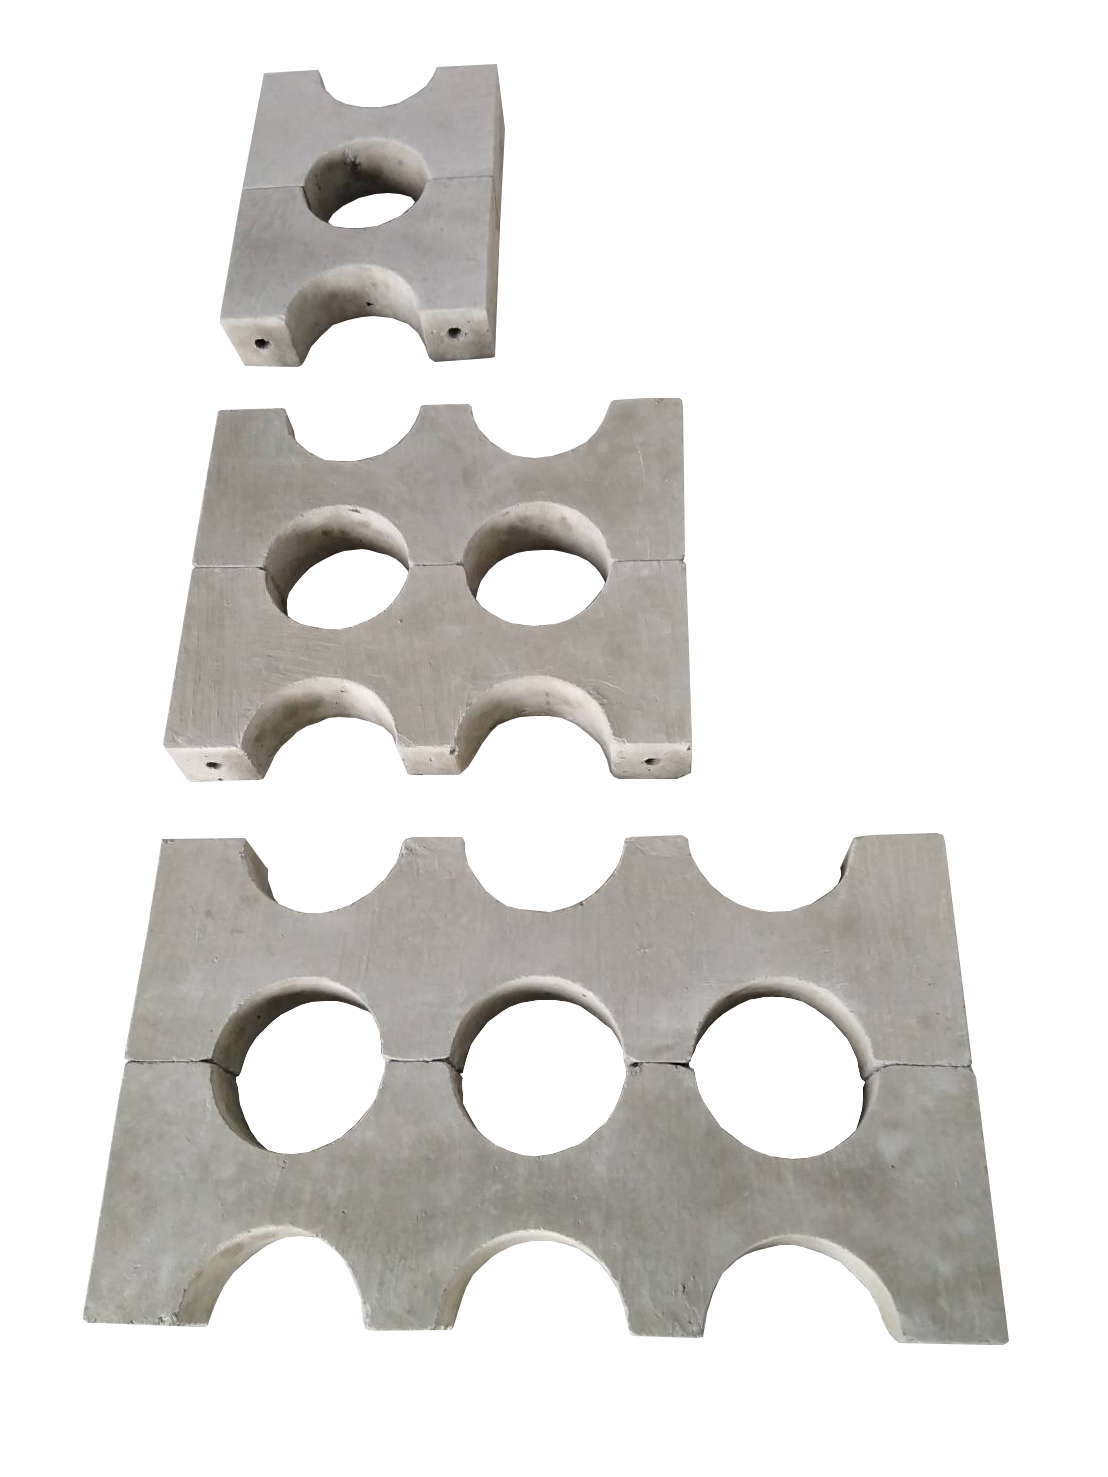 หวีคอนกรีตรองท่อ HDPE มาตราฐานการไฟฟ้า แคล้มล็อคท่อ HDPE (HDPE Spacer Block, Concrete Spacer Block for HDPE, Duct Bank Concrete Spacers) (Concrete Spacer Block for 63,140 mm HDPE Conduct)